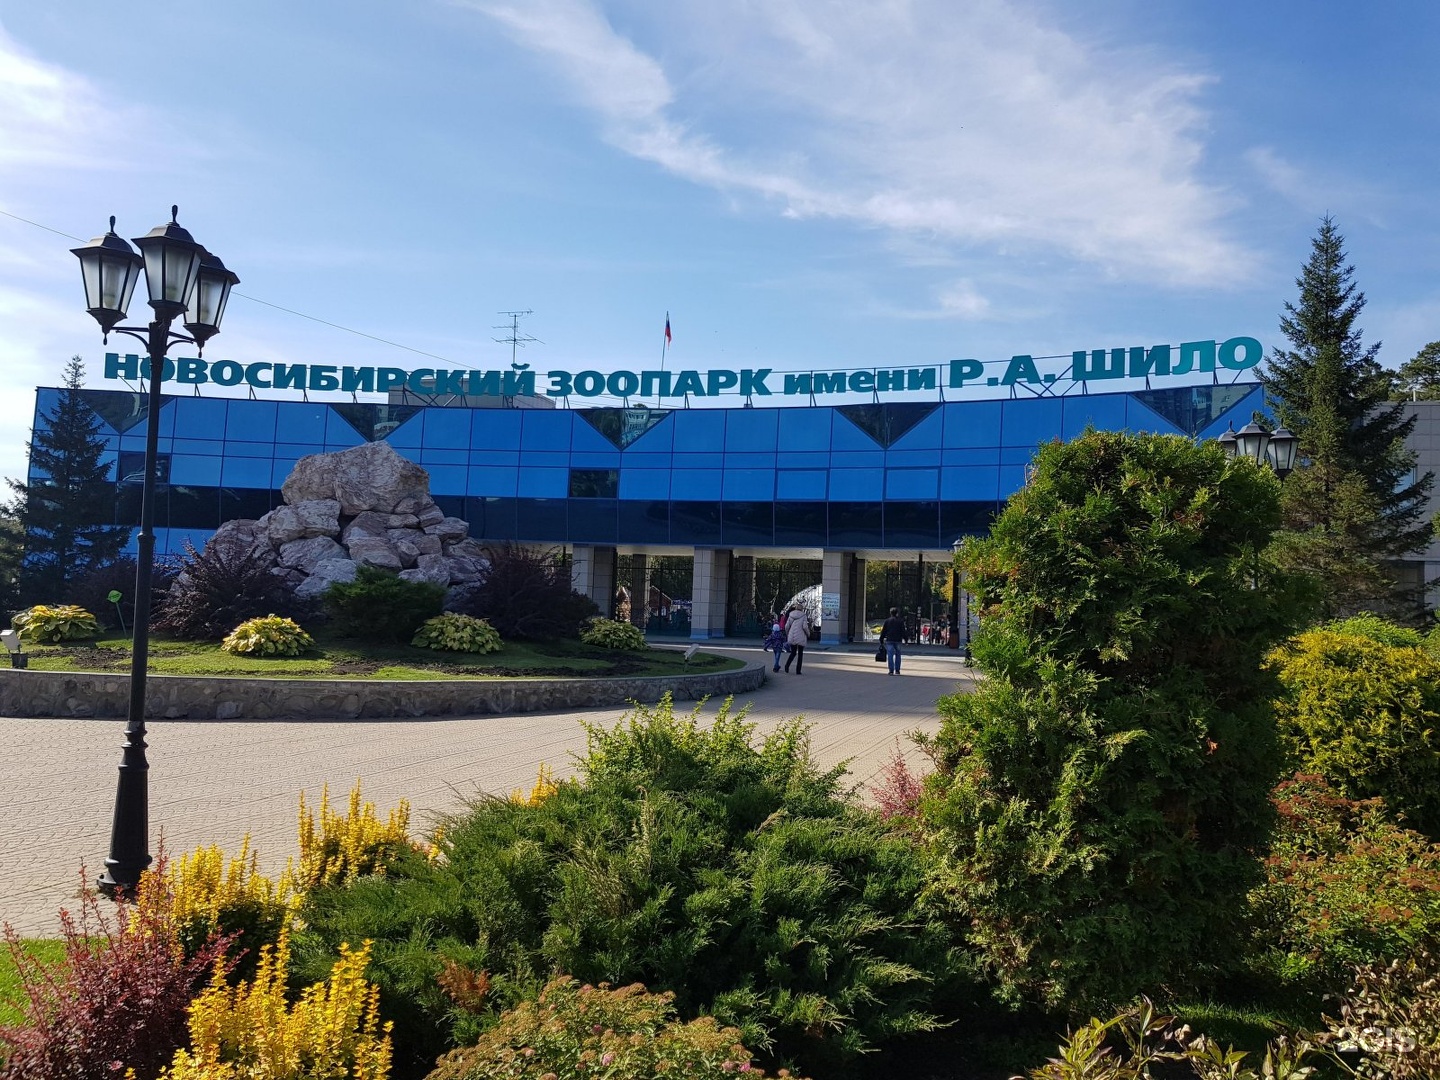 Новосибирский зоопарк достопримечательности Новосибирска